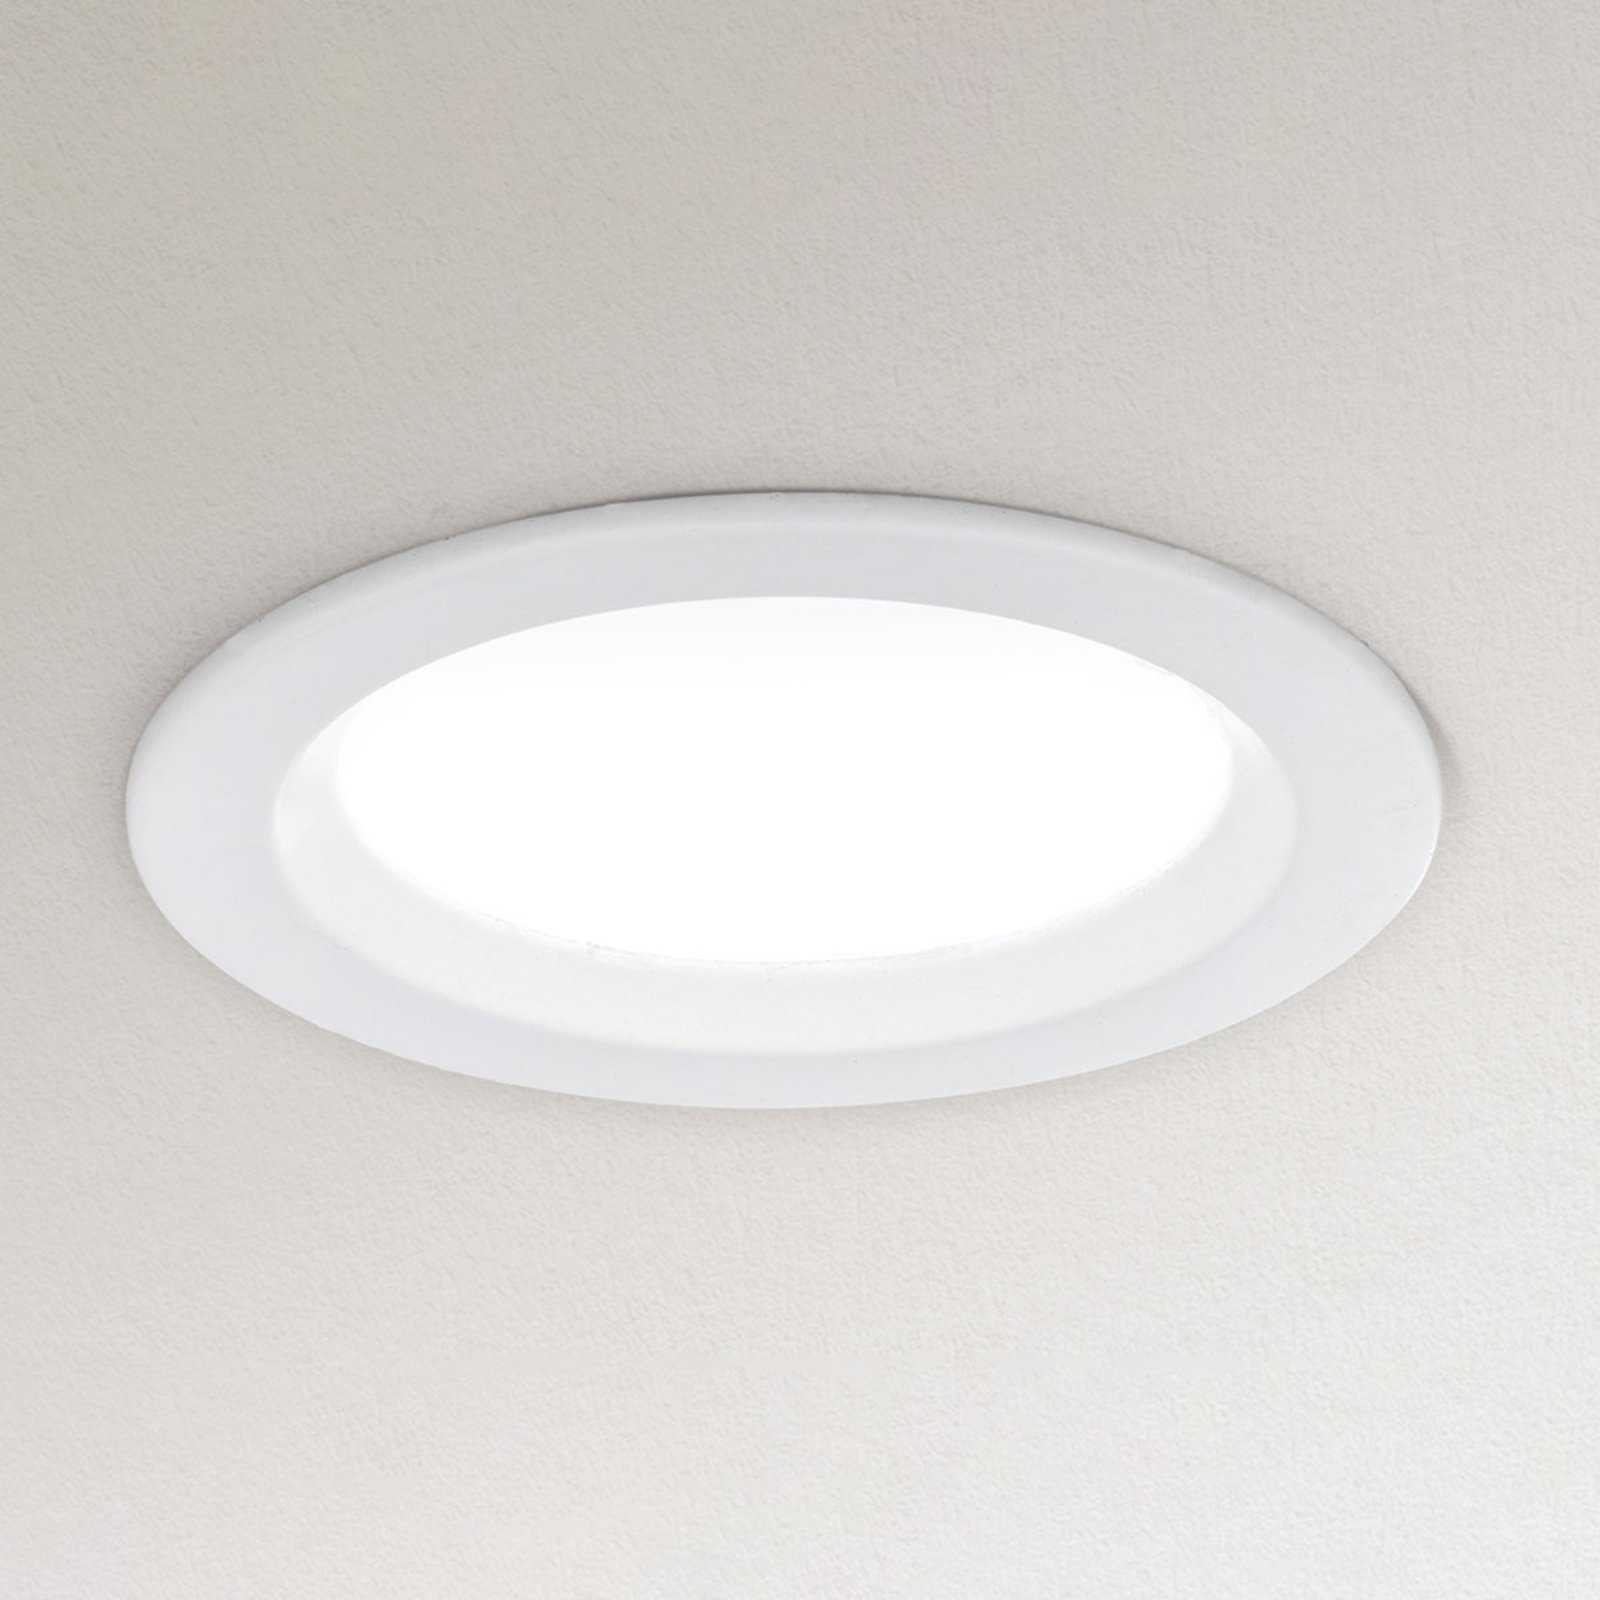 Lampă LED încastrată Spock Ø 9 cm, dimabilă, alb